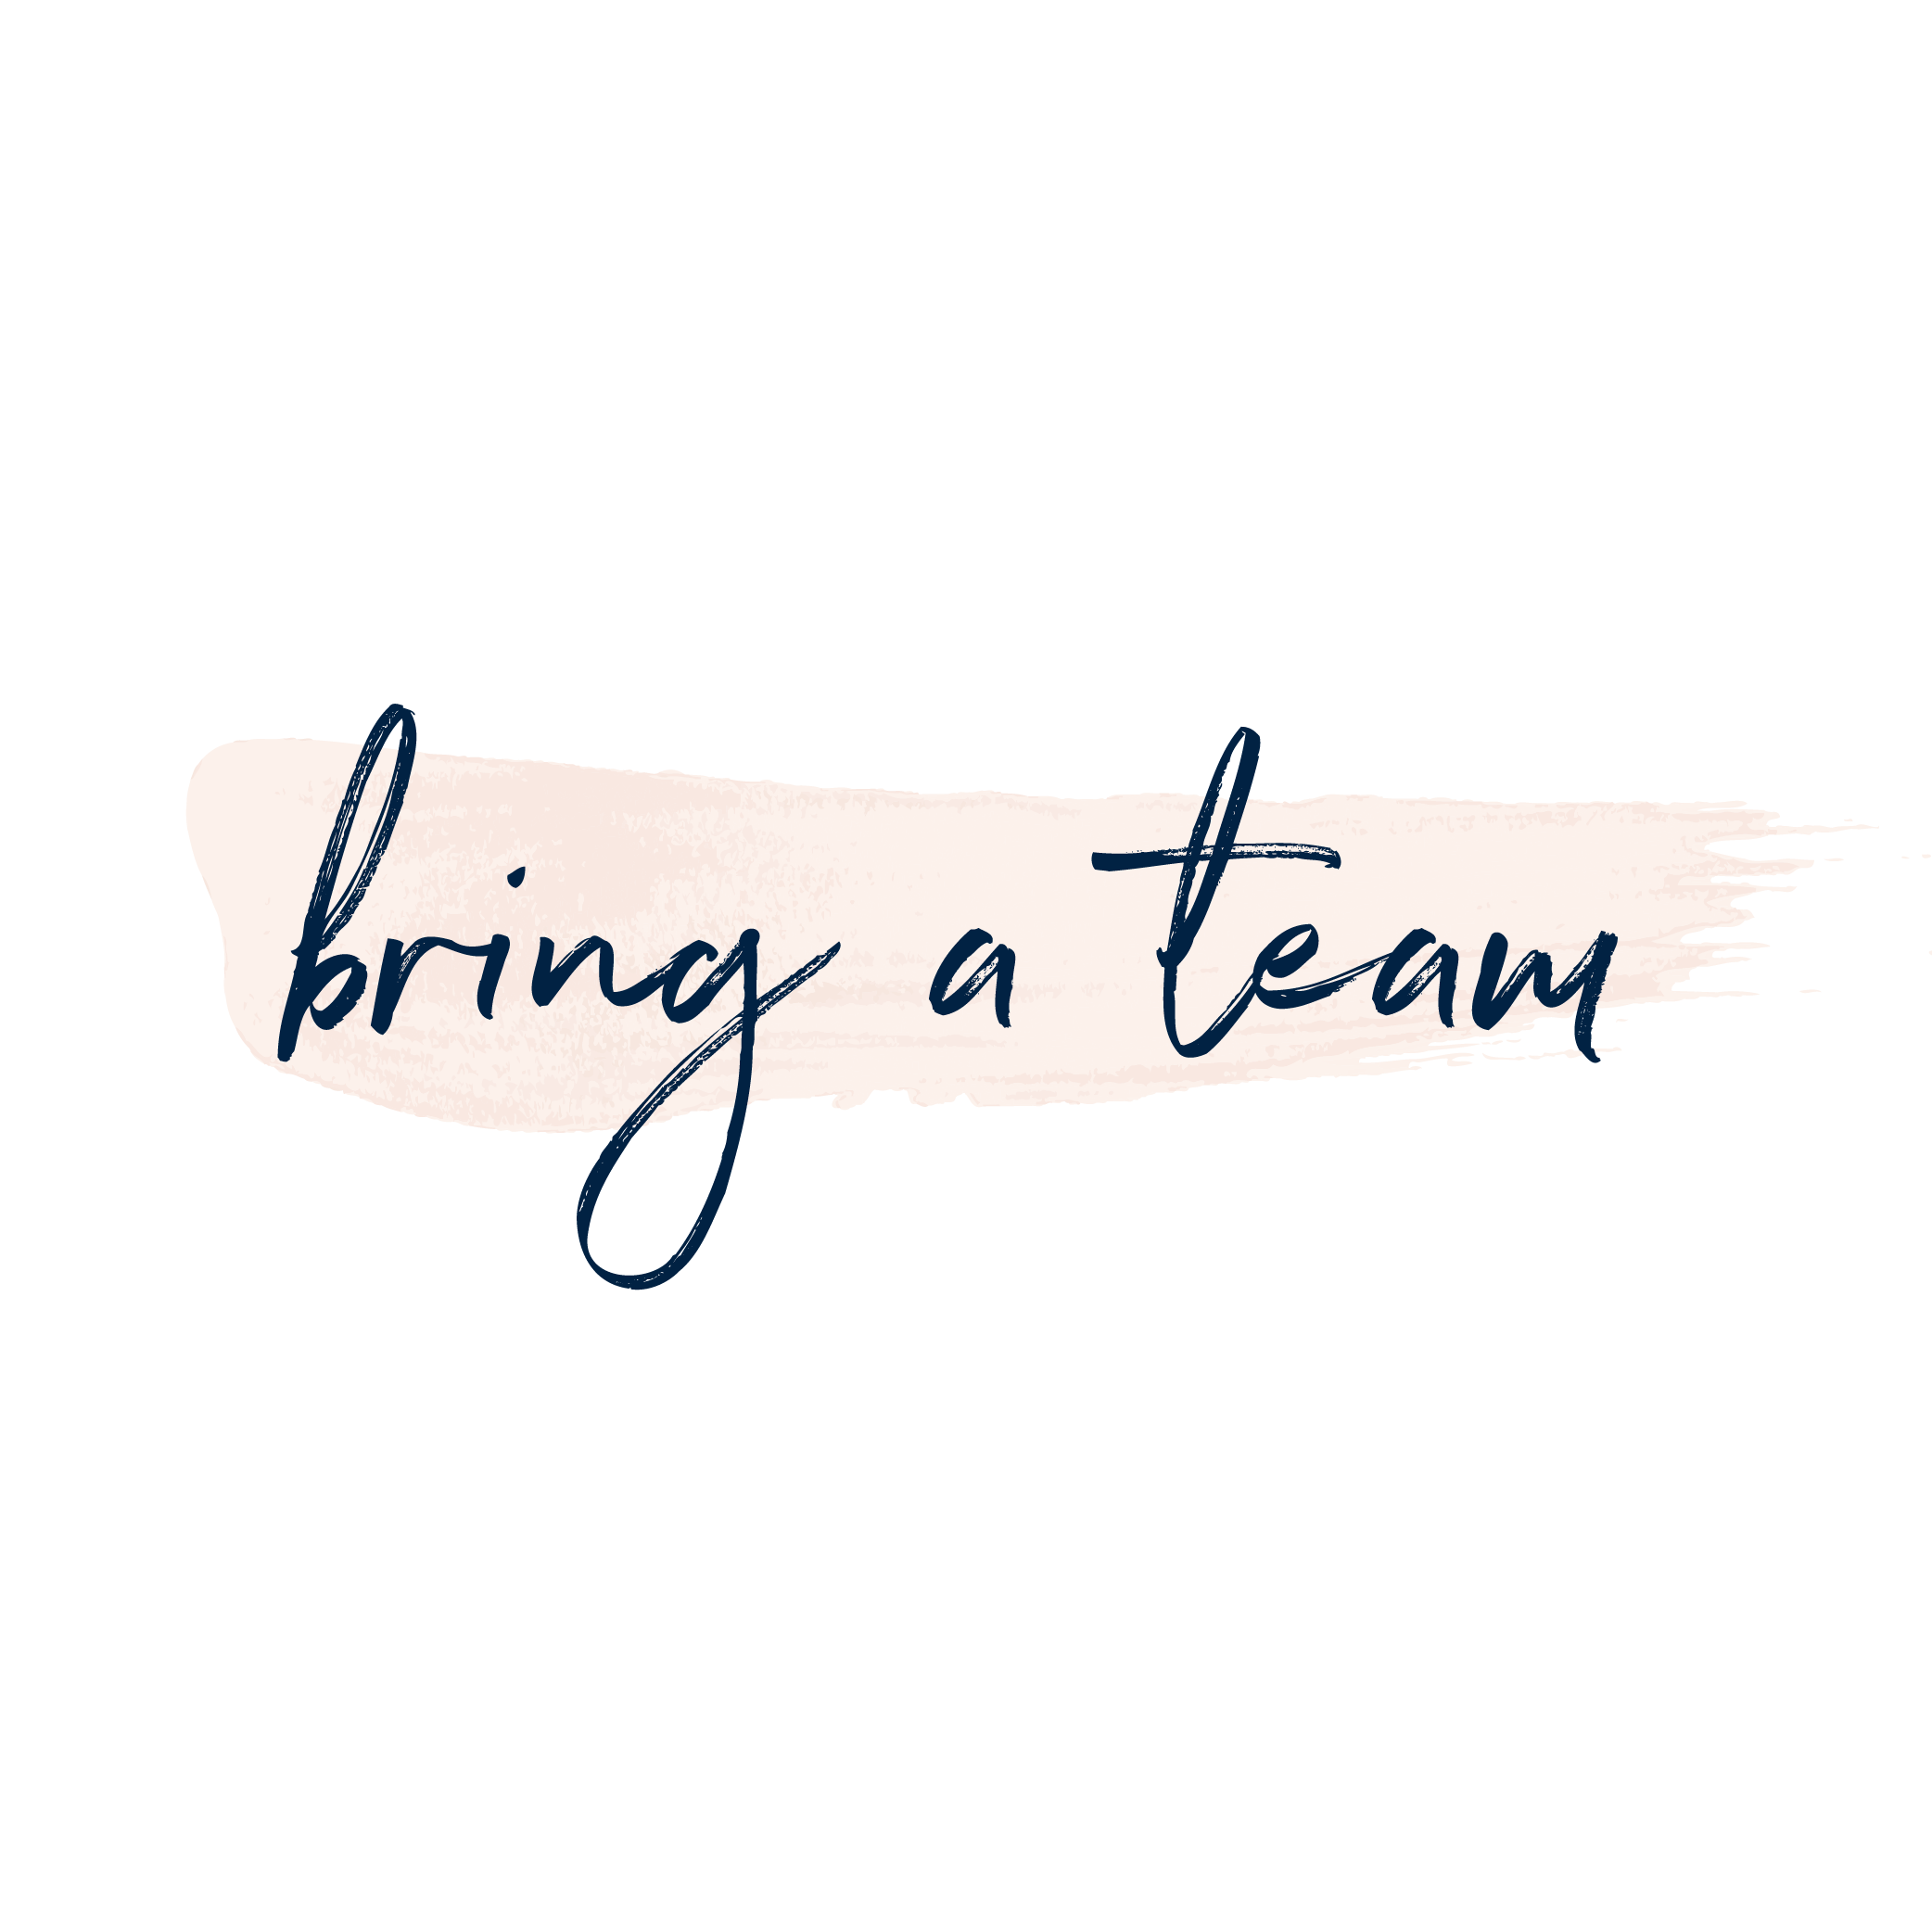 bring a team (Copy)